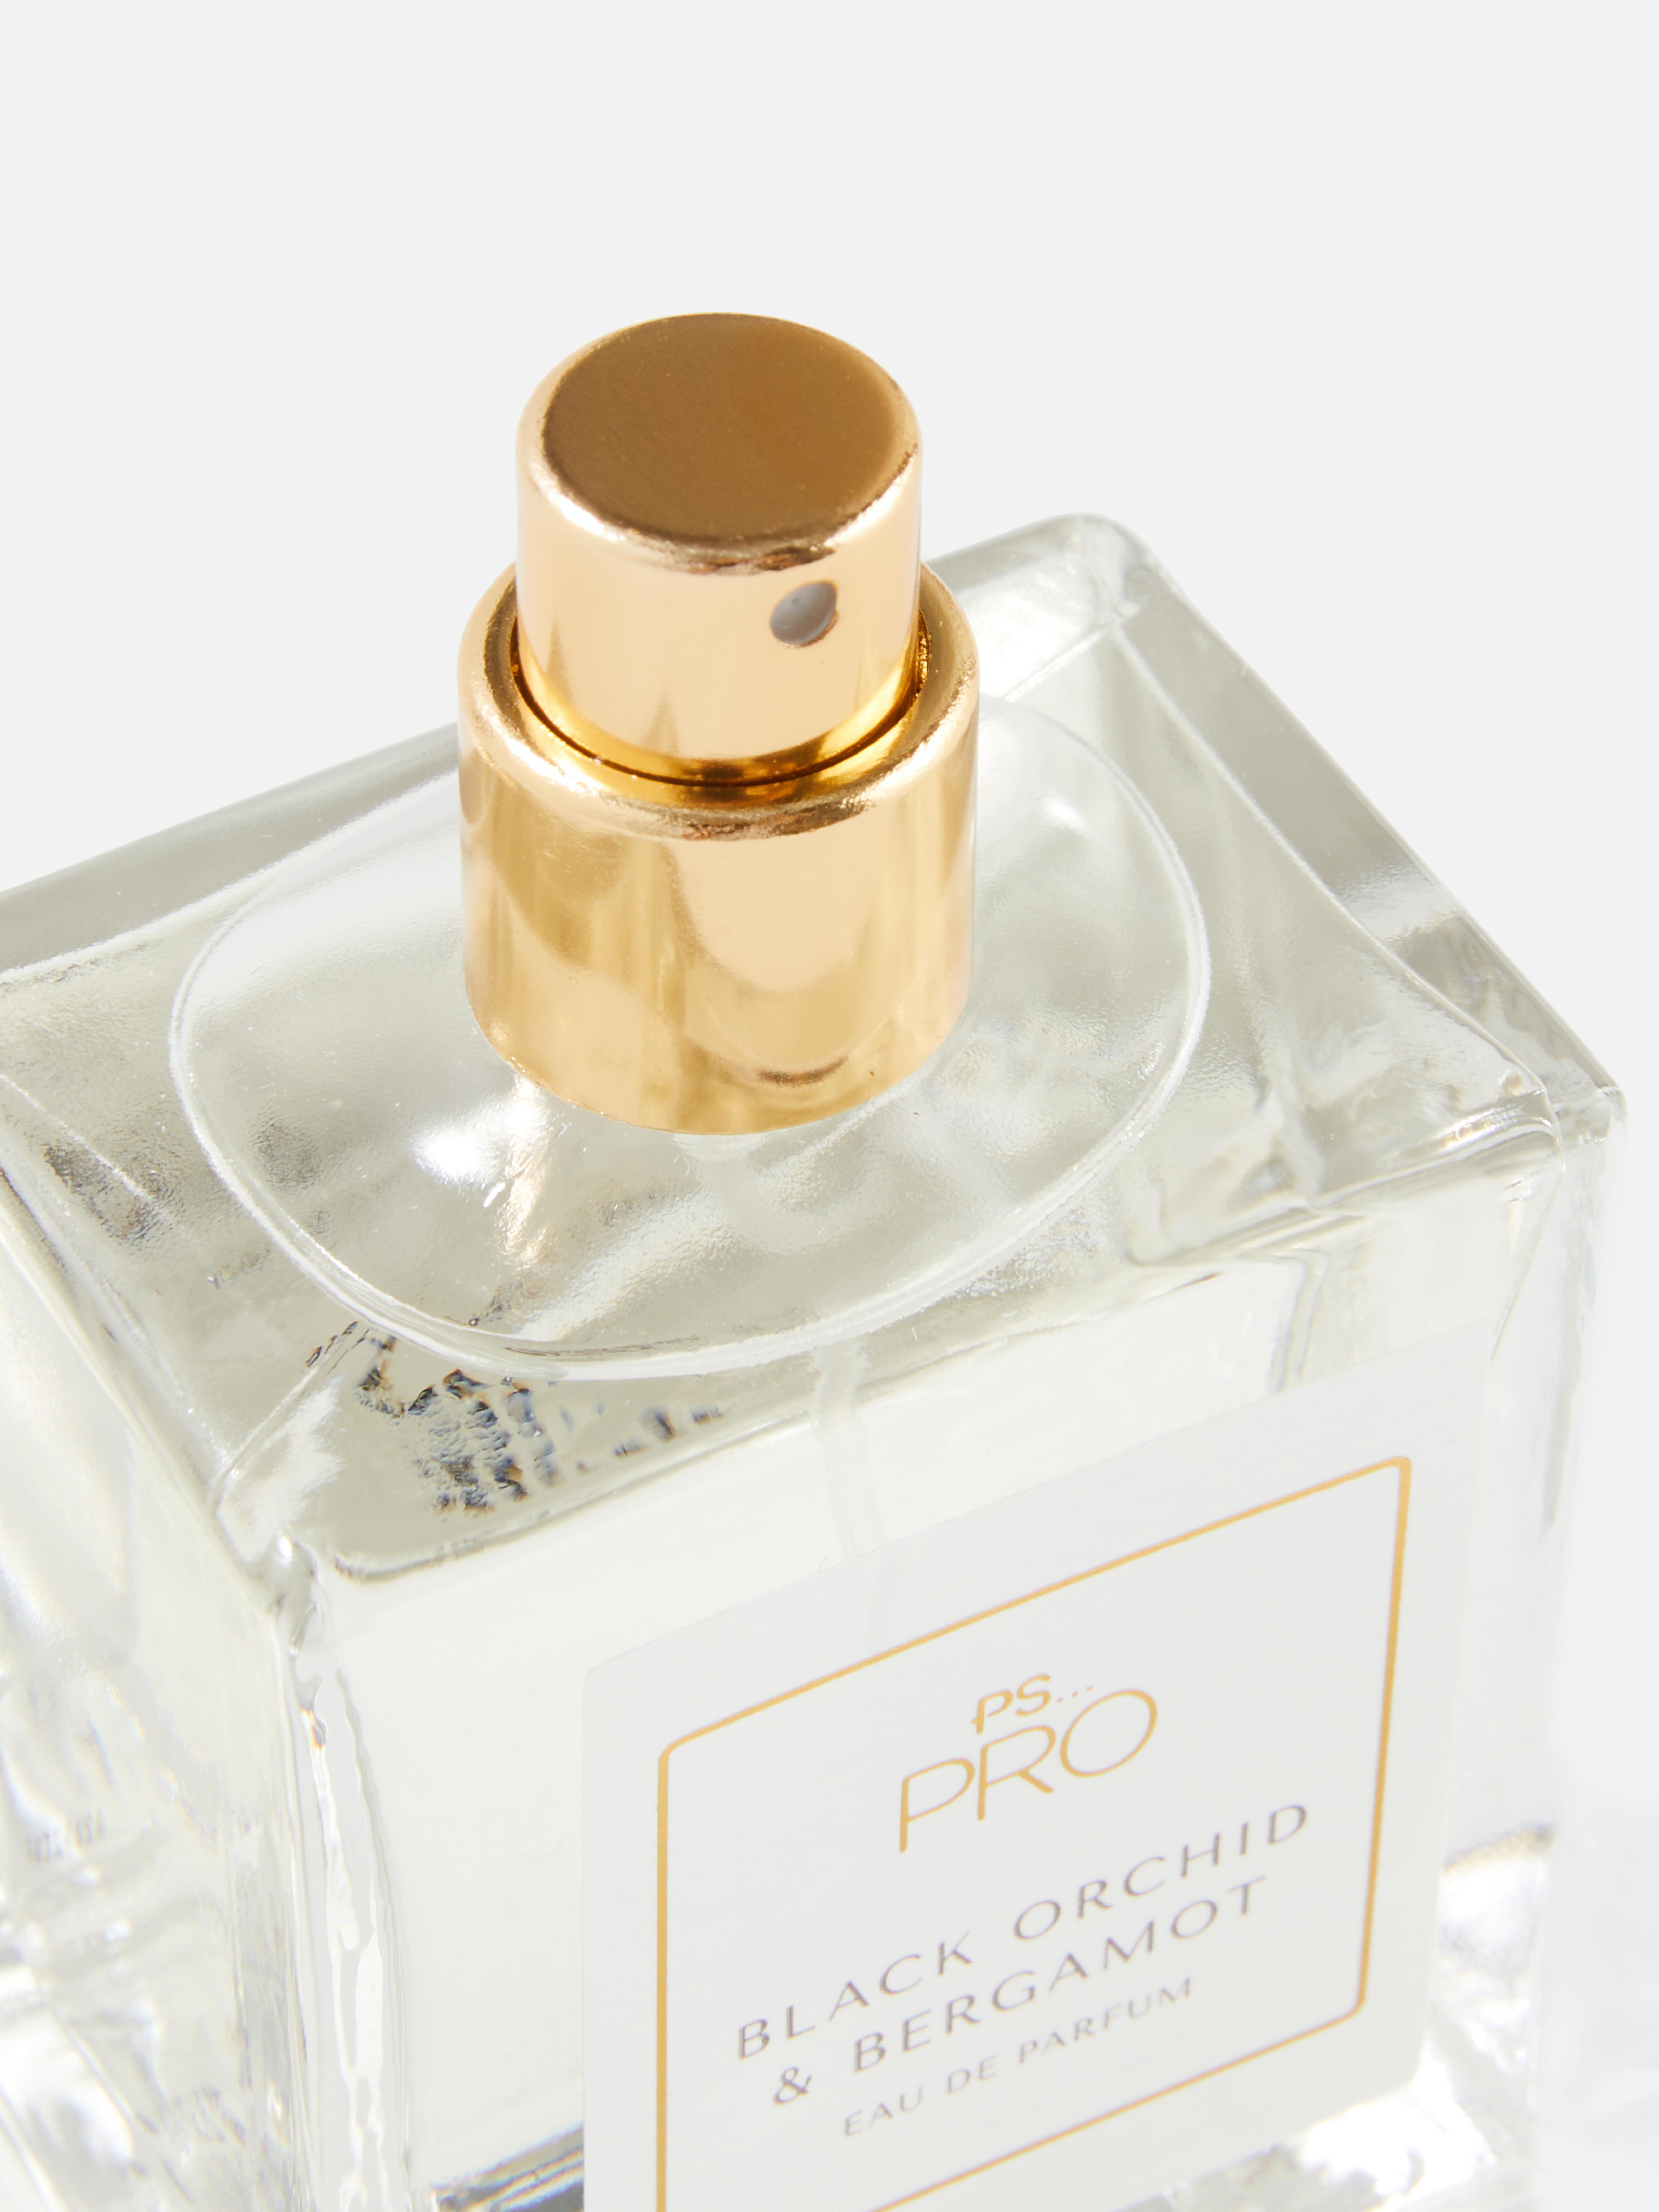 PS… Pro Black Orchid & Bergamot Eau de Parfum